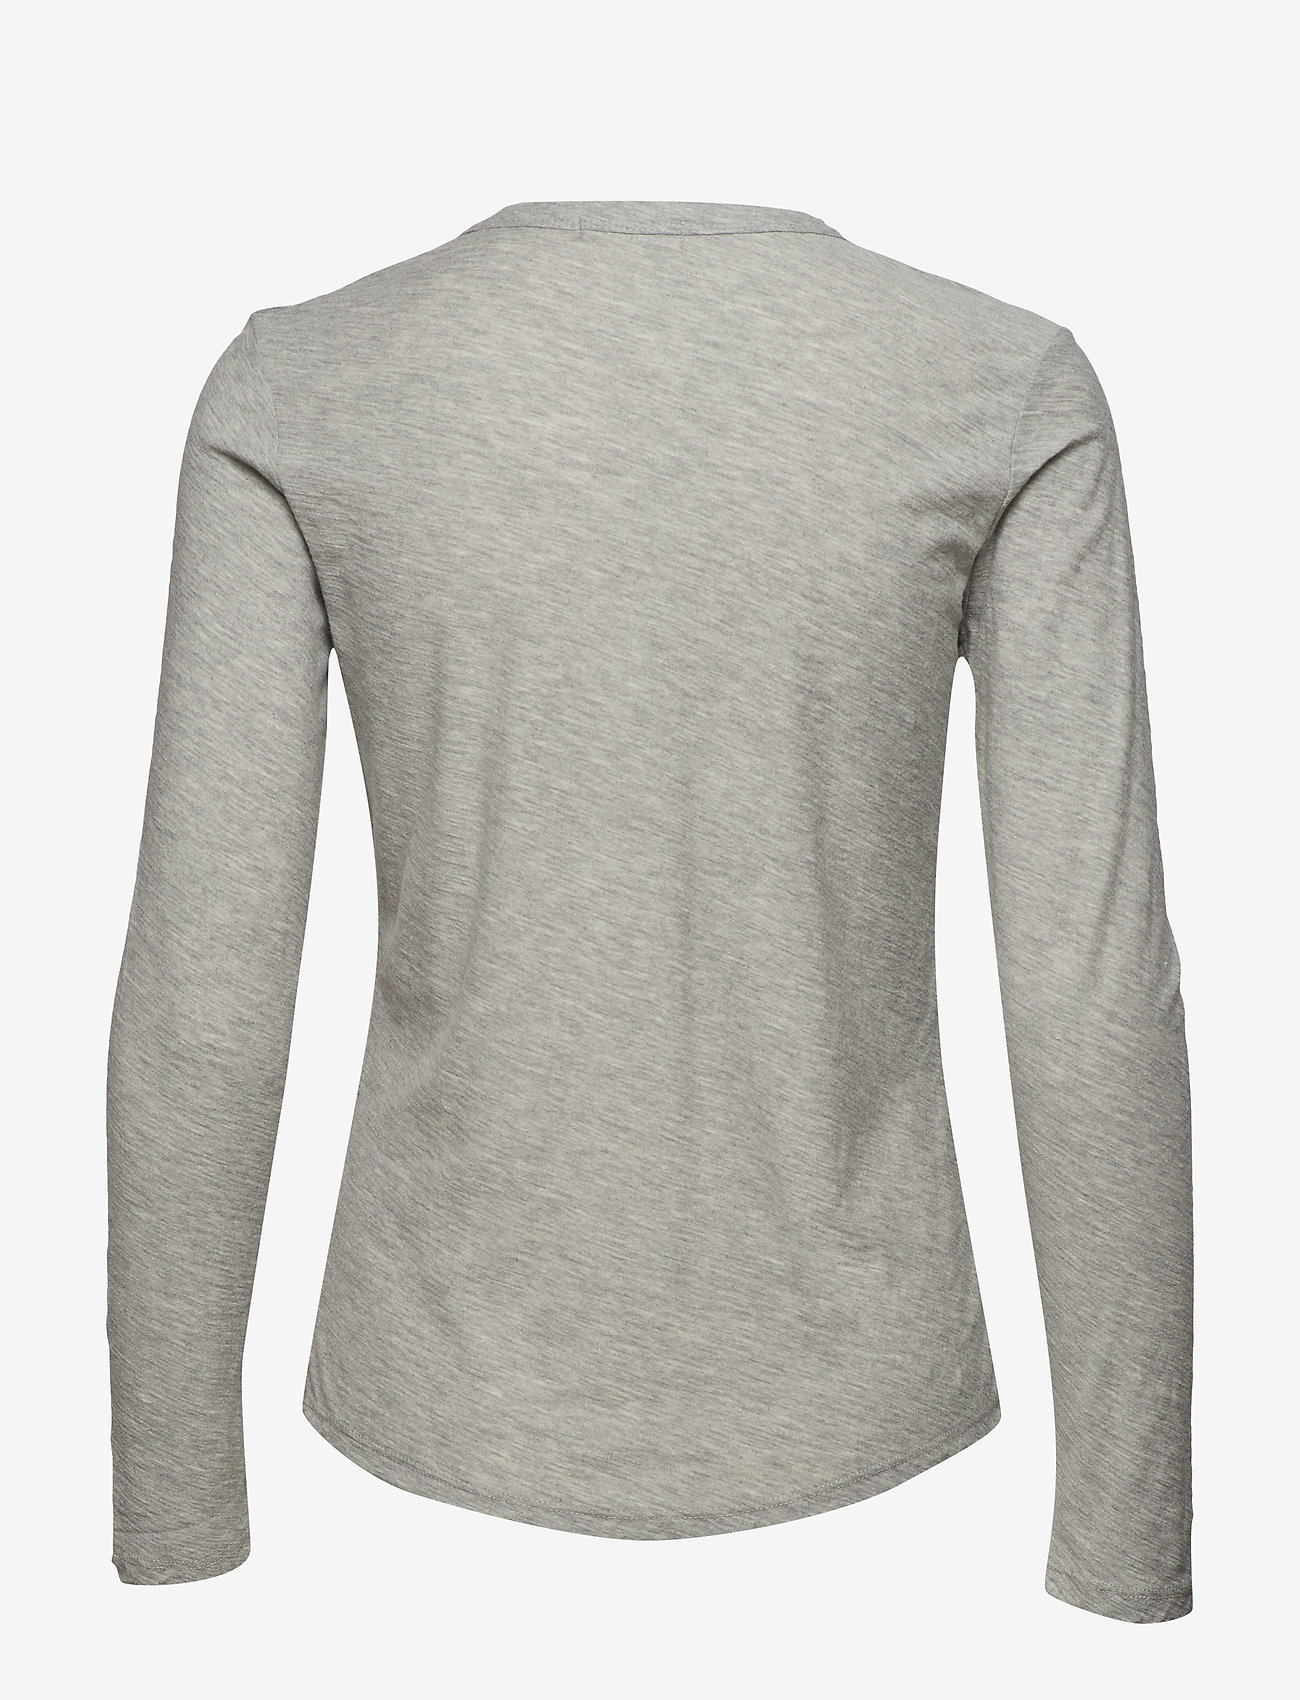 Levete Room - LR-ANY - t-shirts met lange mouwen - l9950 - light grey melange - 1